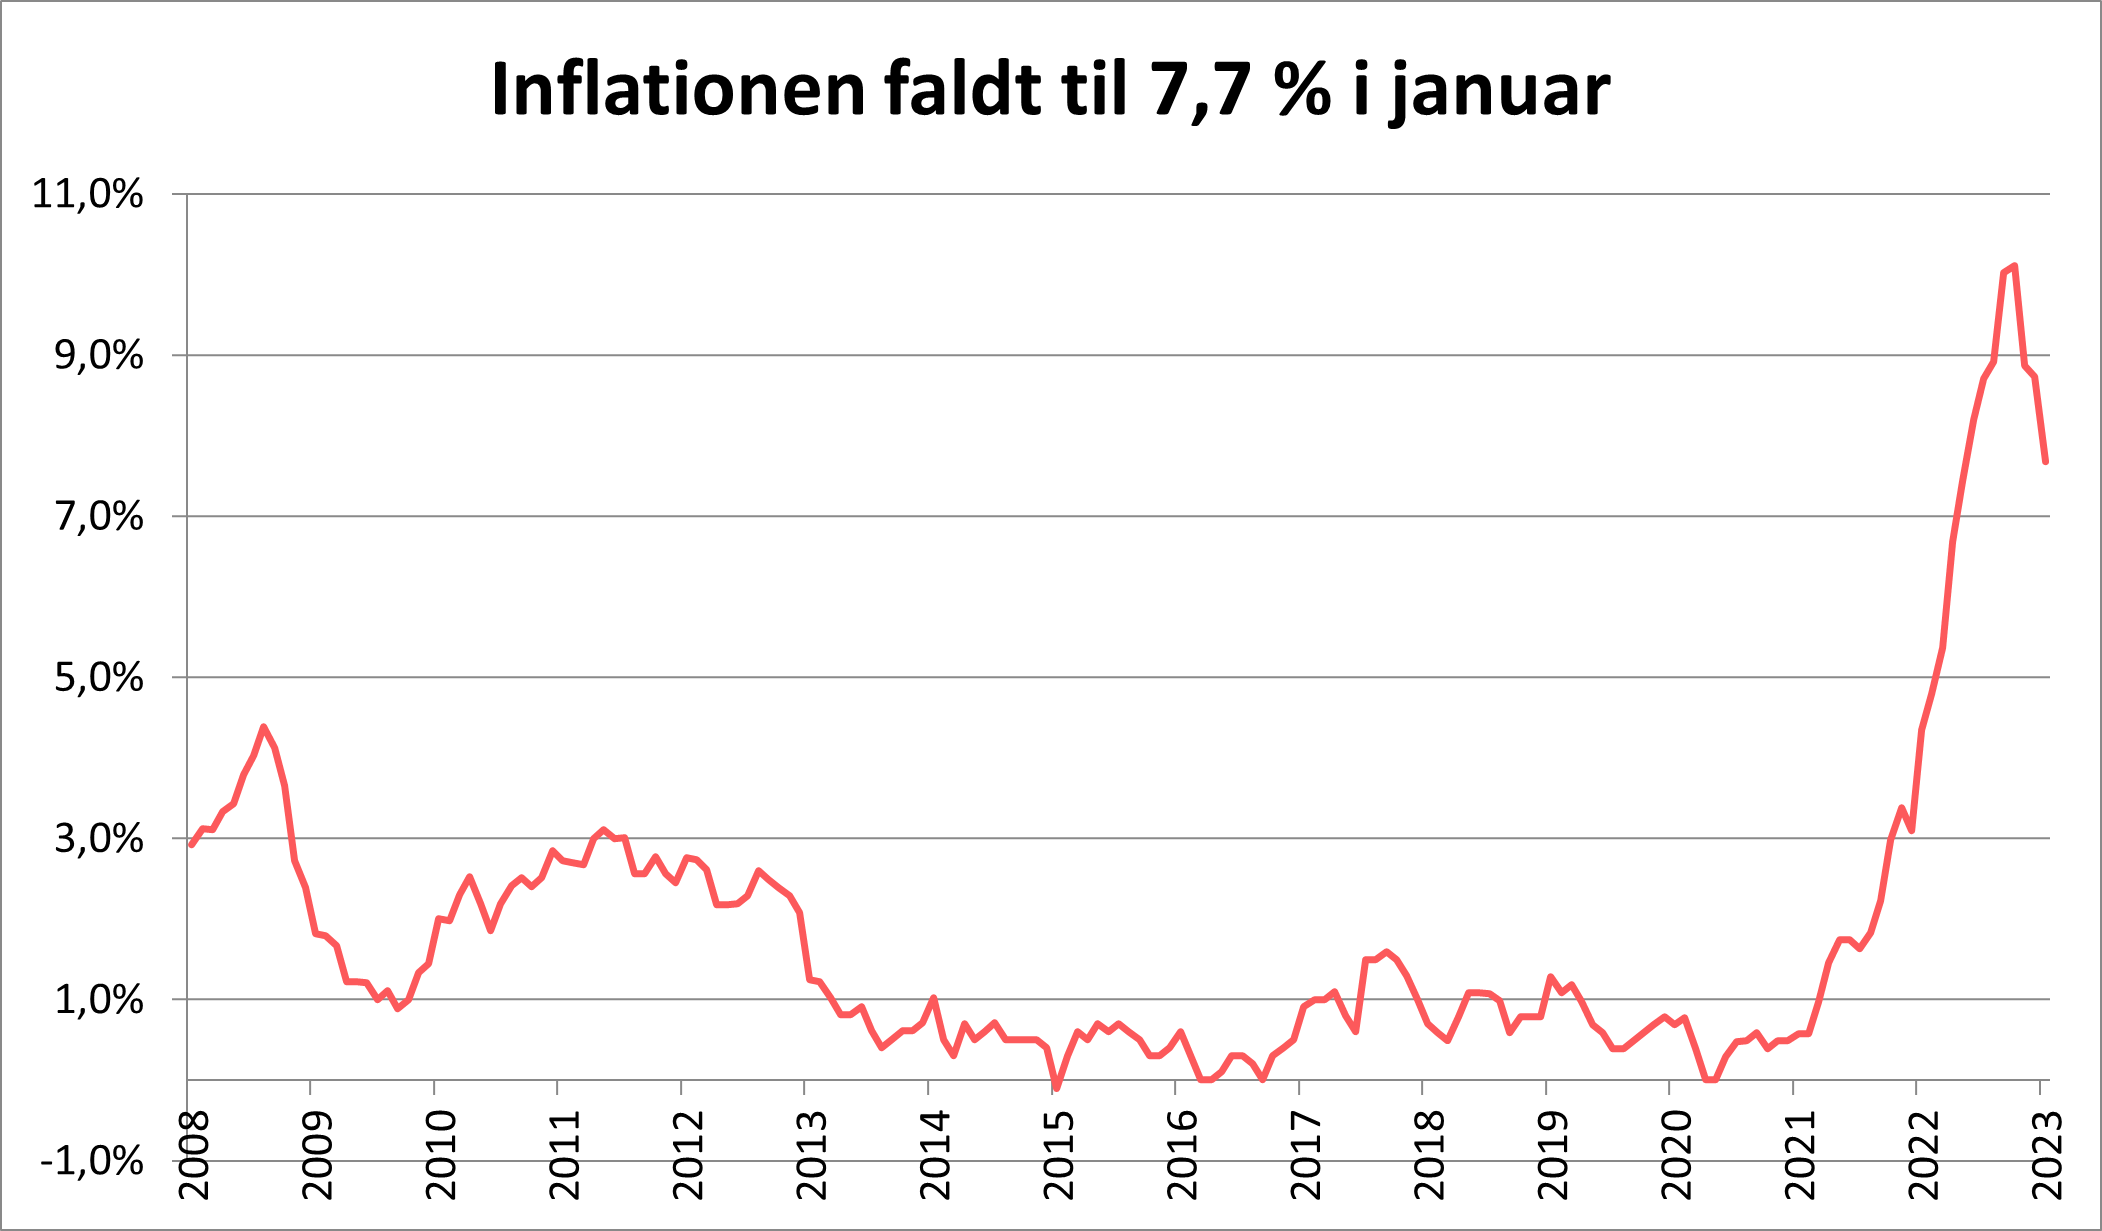 Inflationen faldt til 7,7% i januar